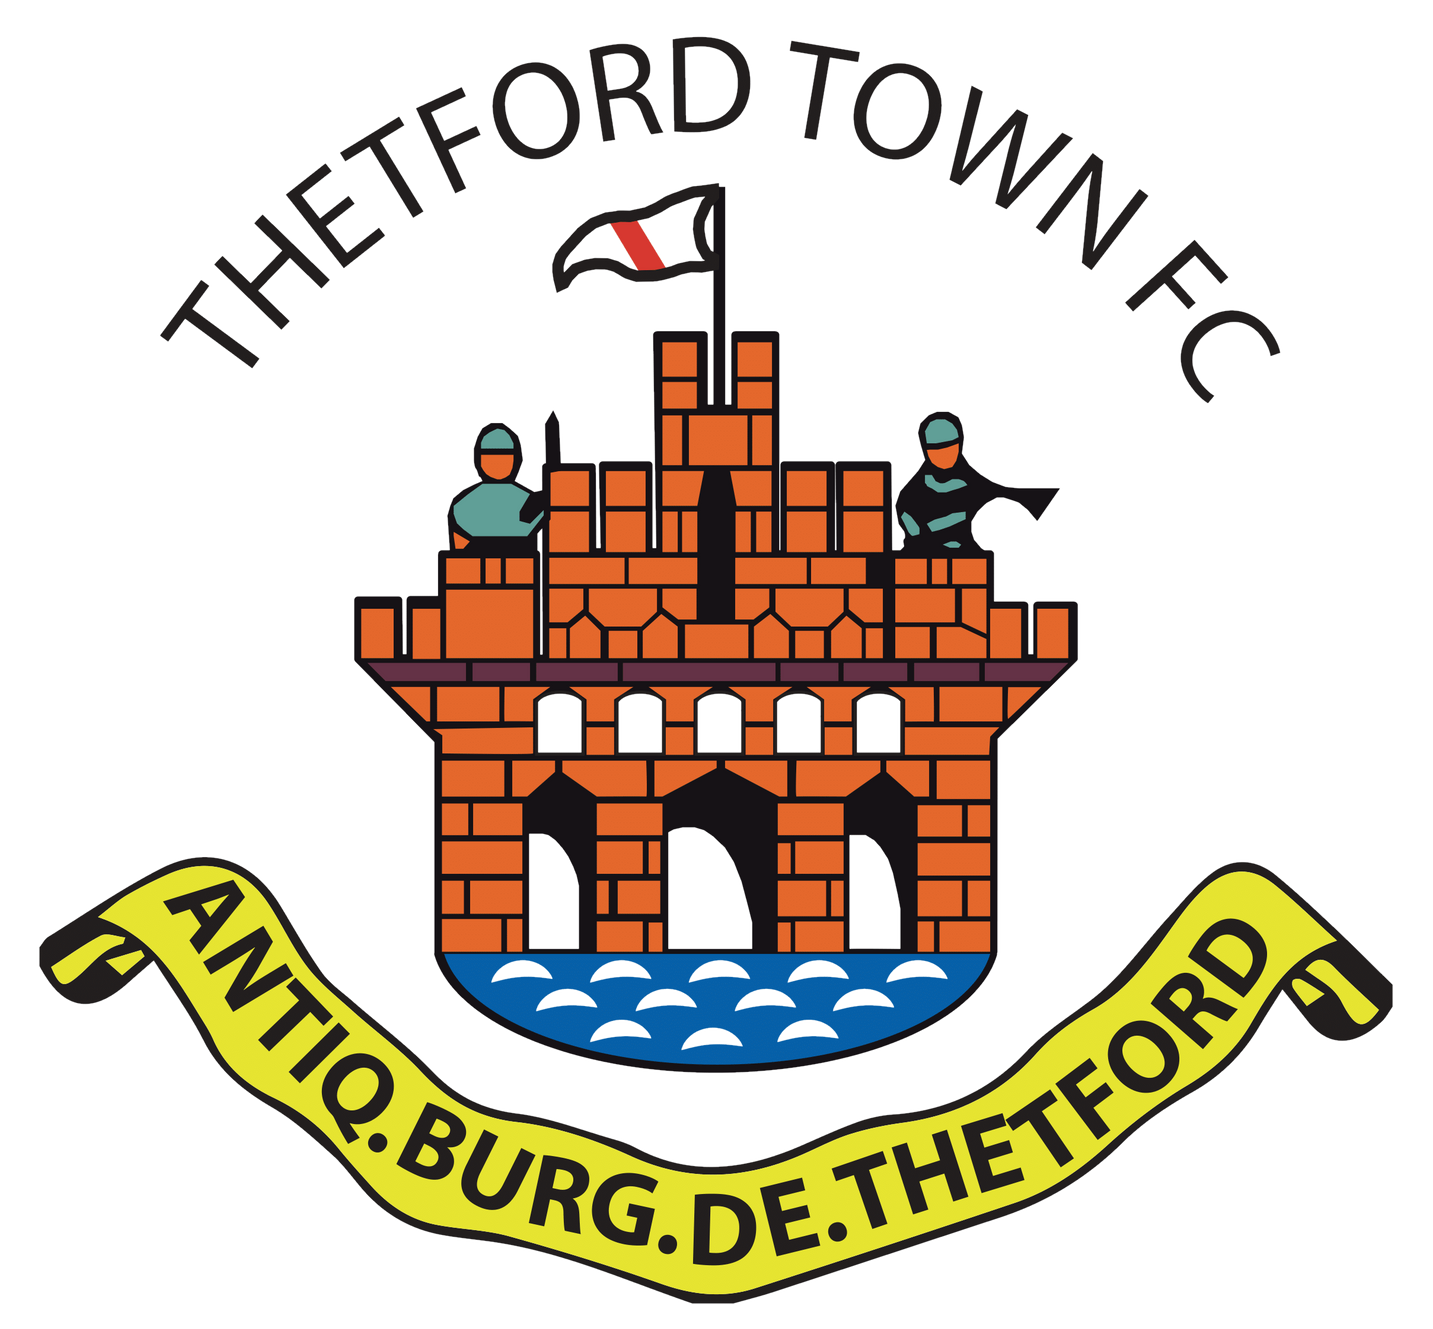 Thetford Town